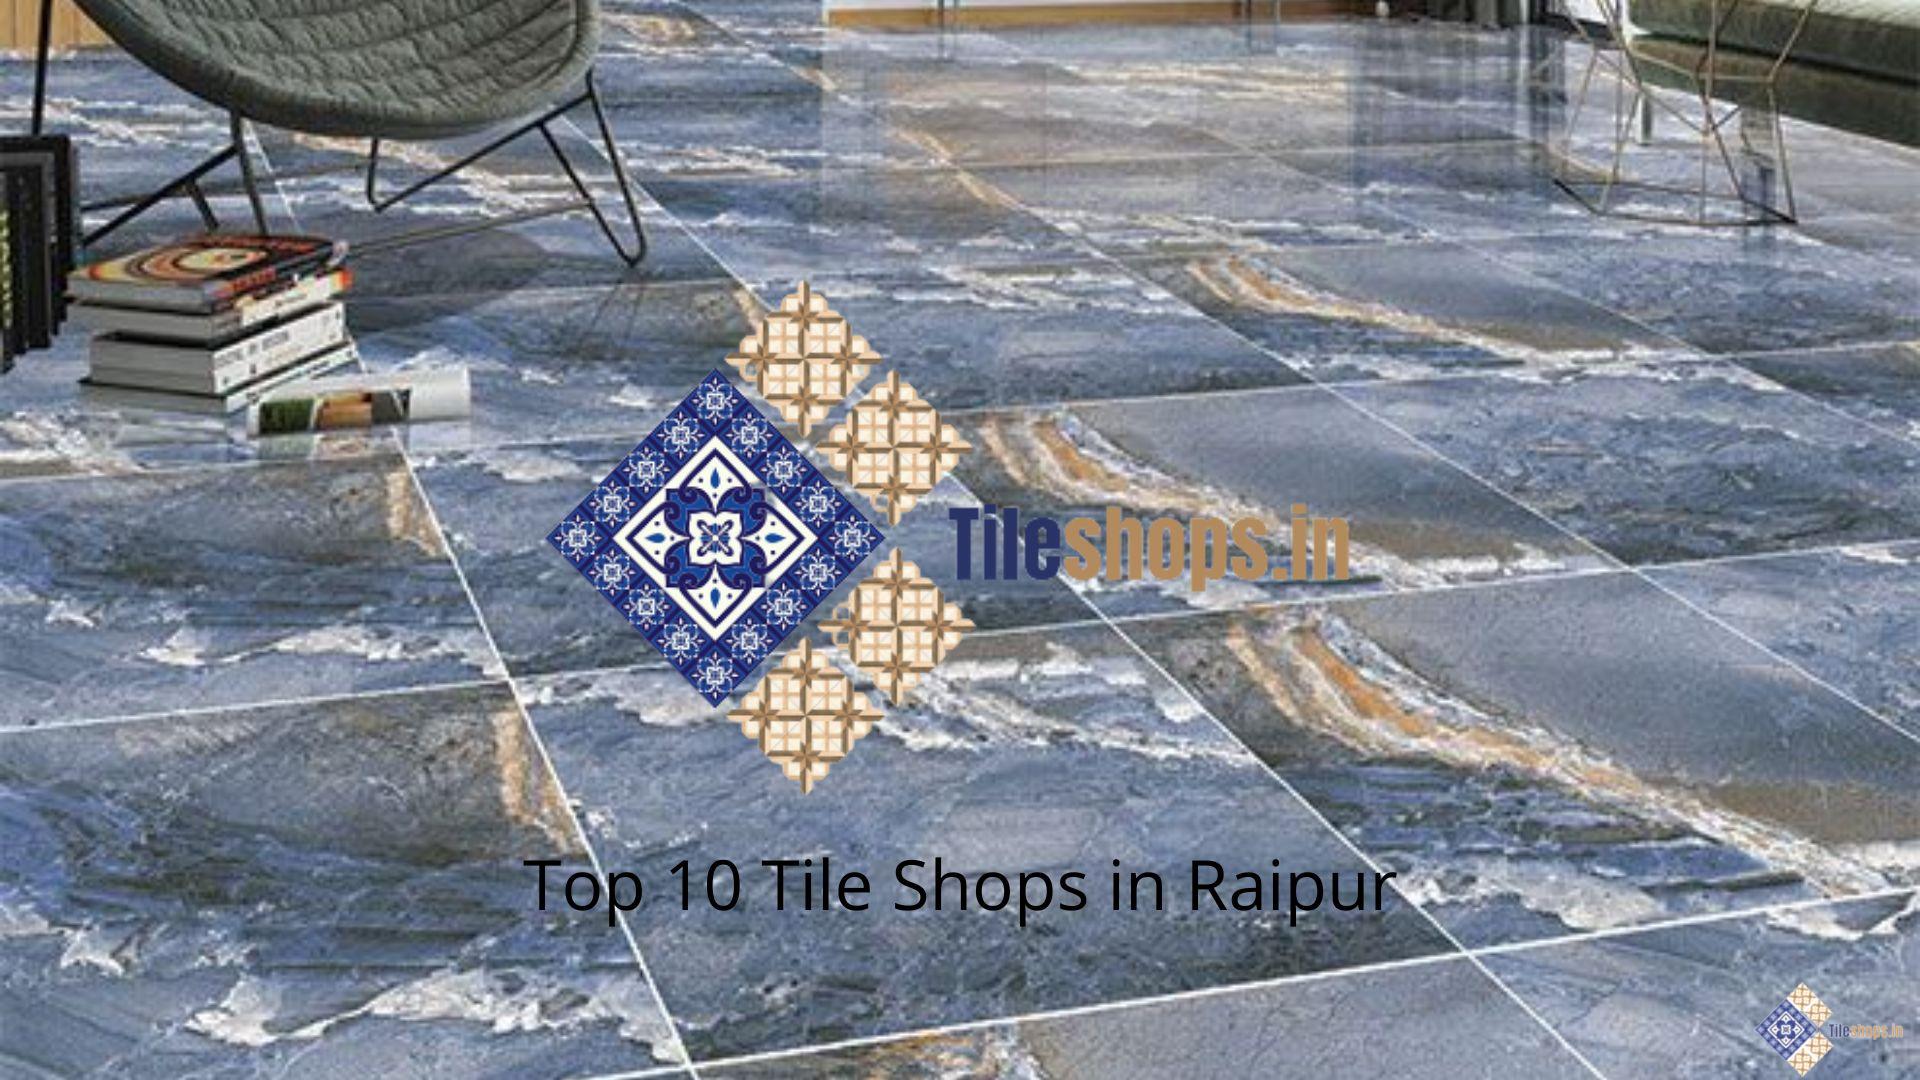 Top 10 Tile Shops in Raipur